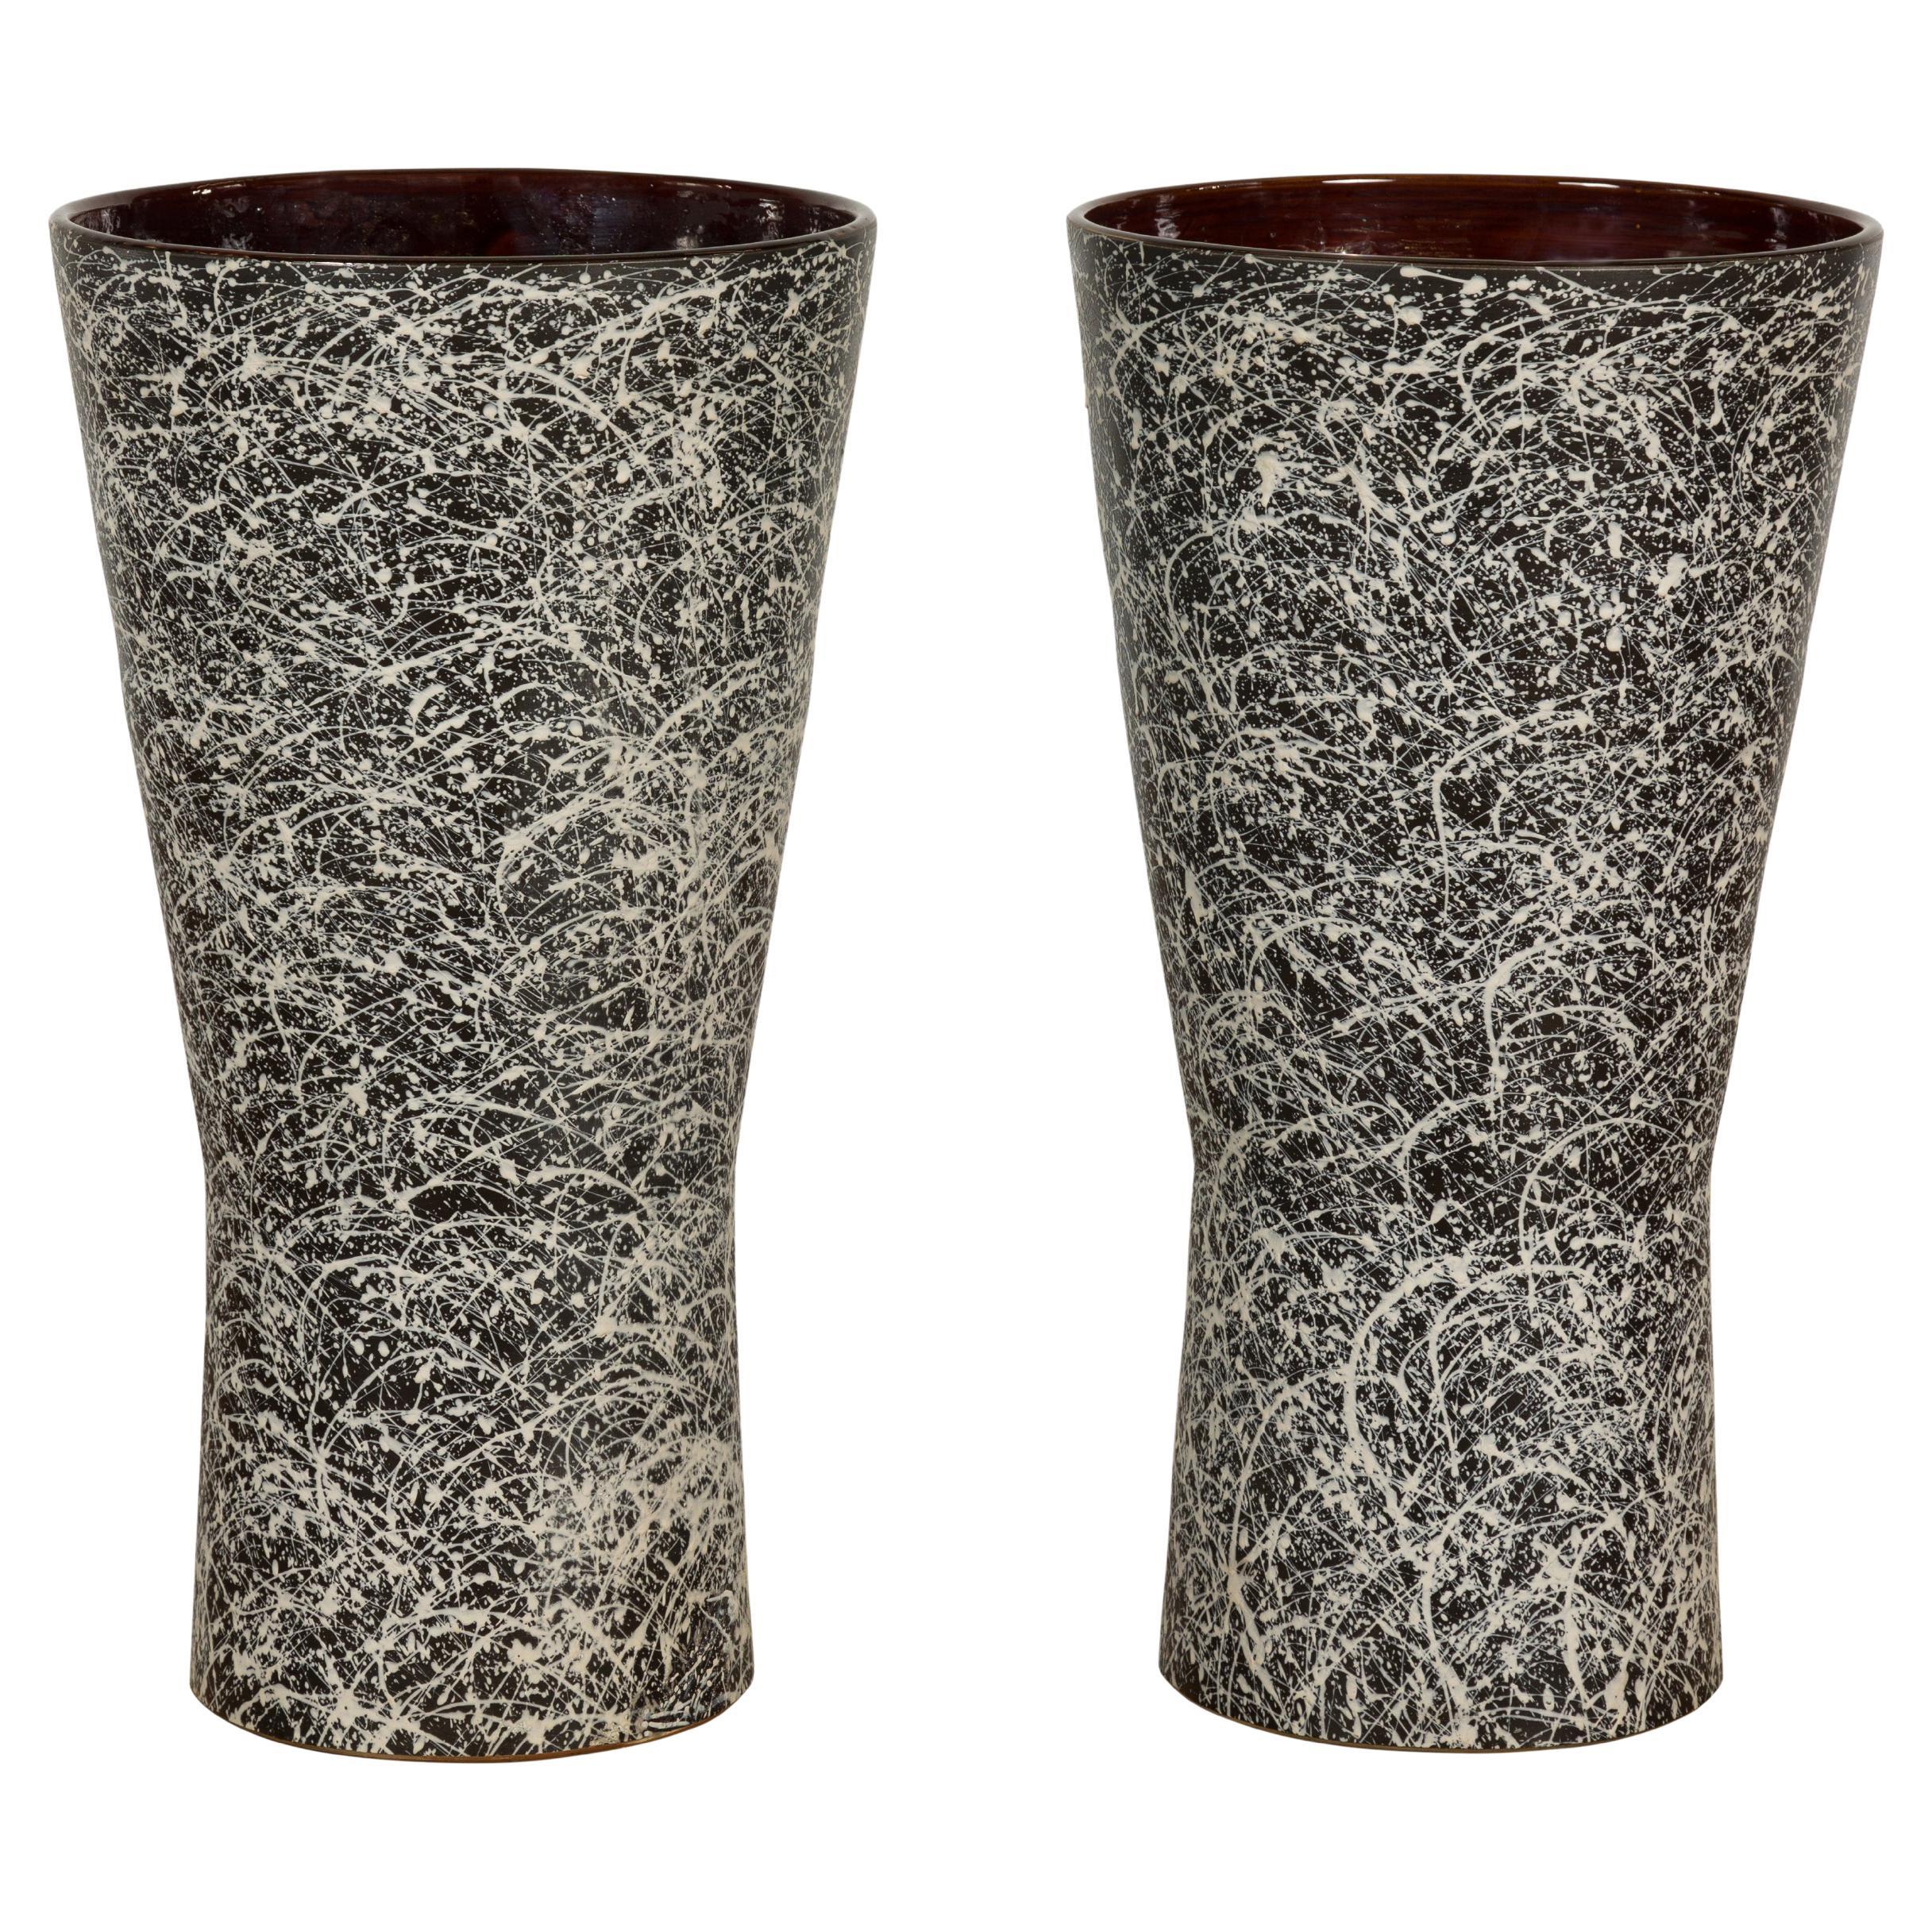 Pair of Textured Black & White Spattered Ceramic Vases